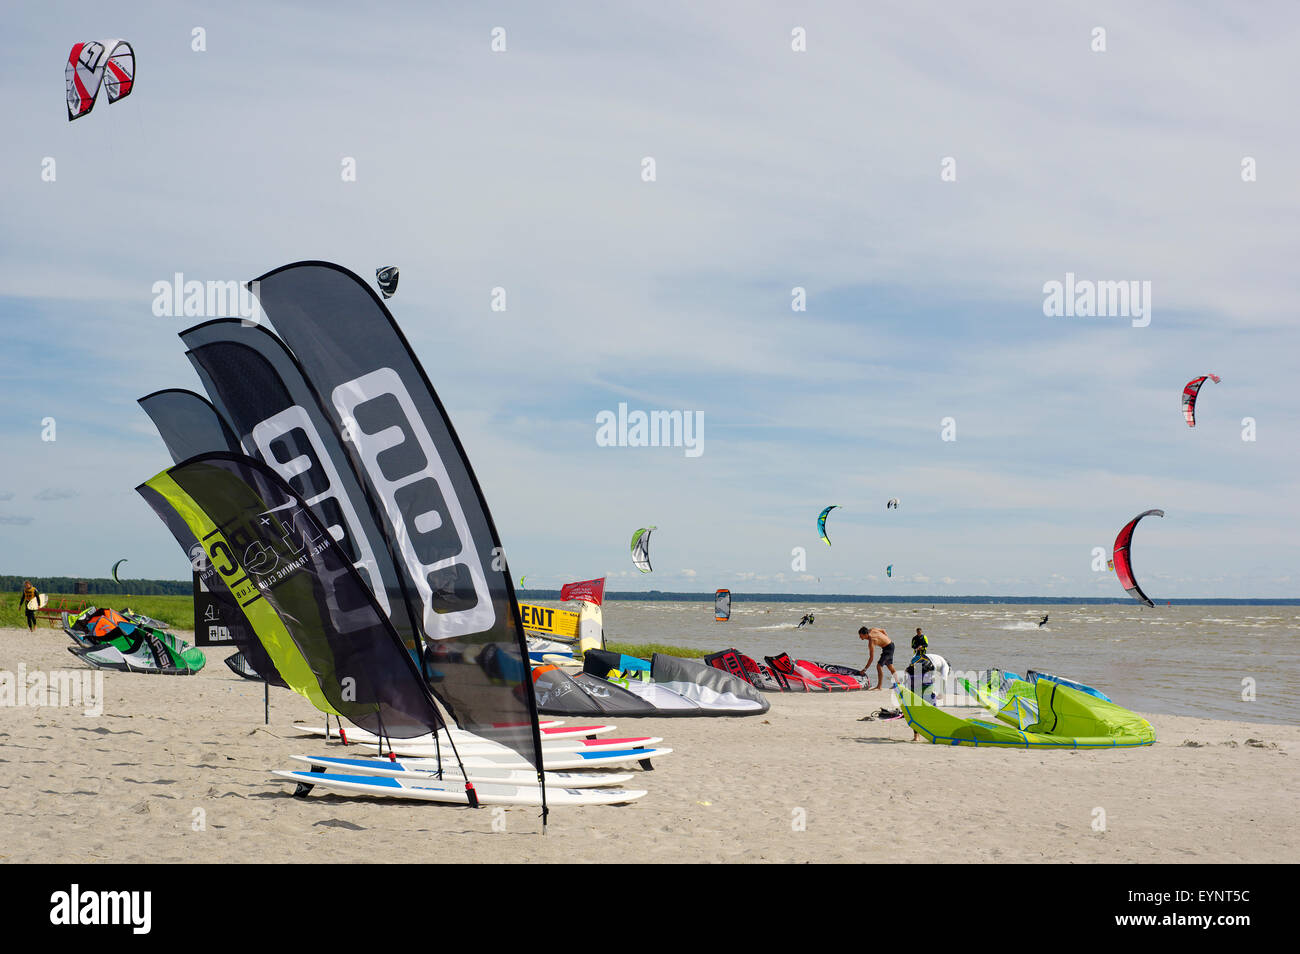 L'Aloha surf club en action sur la plage de Pärnu. Pärnu, Estonie. 21 juillet, 2015 Banque D'Images